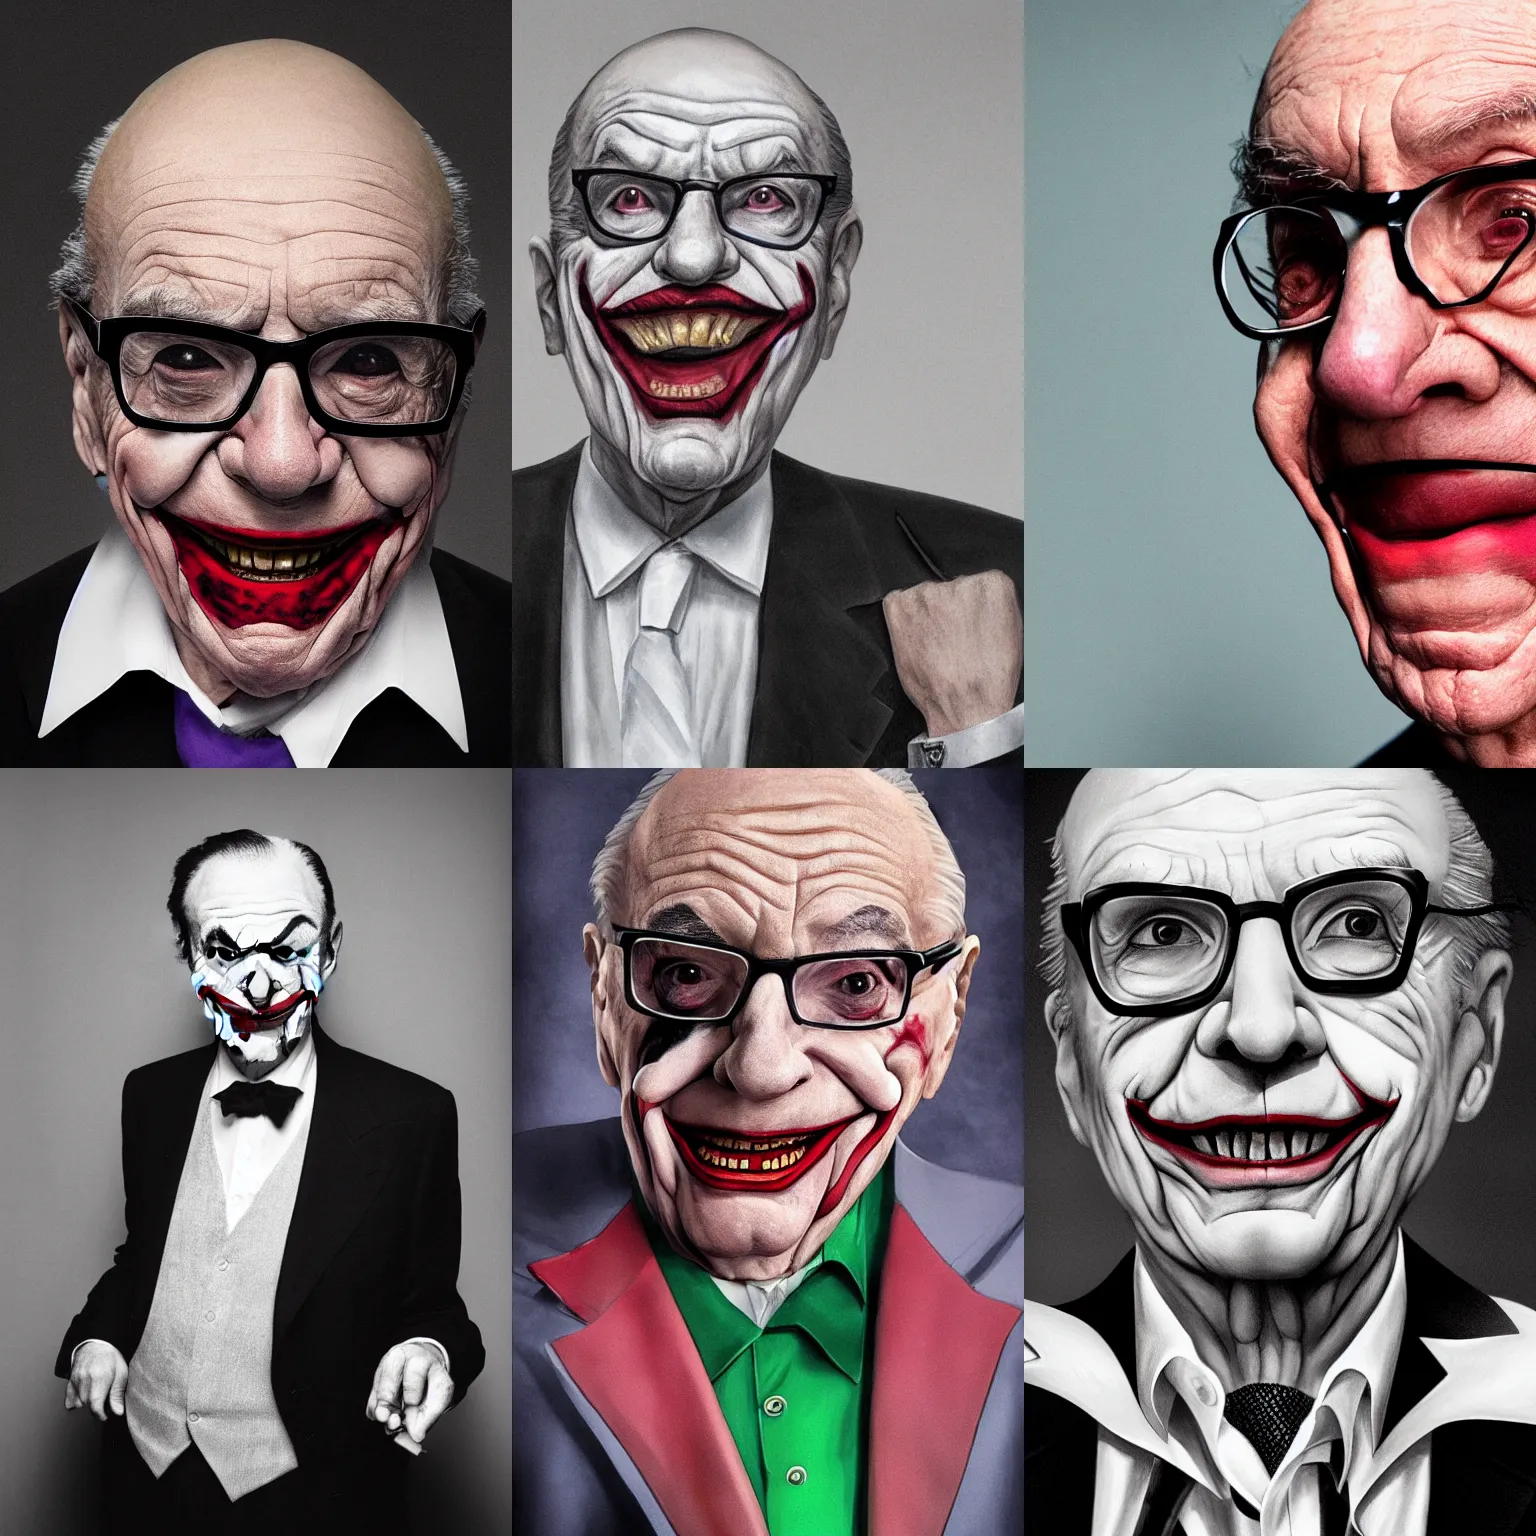 Prompt: Rupert Murdoch as the joker, portrait photograph